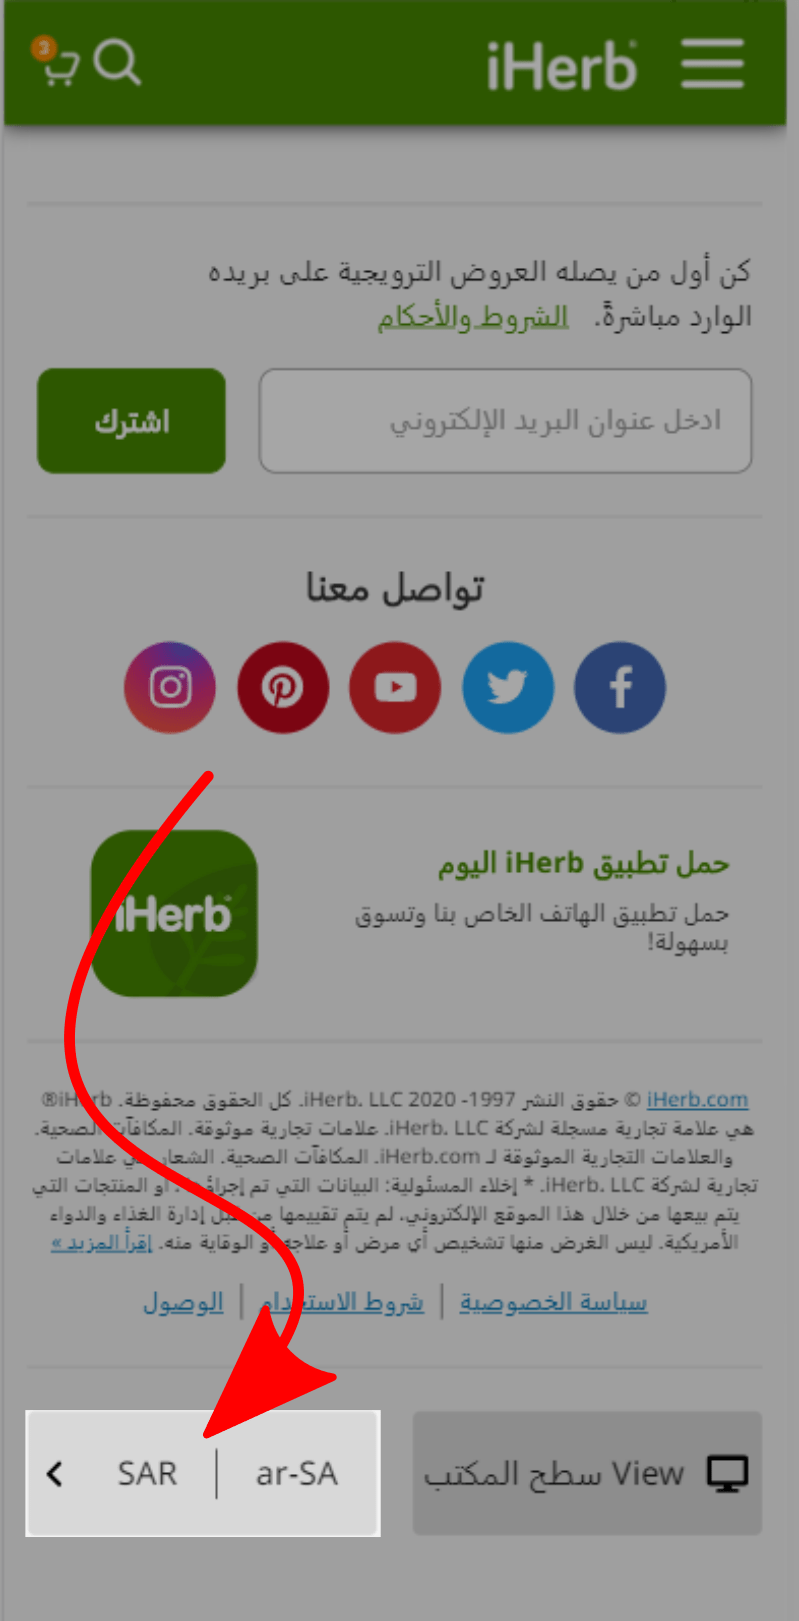 تعديل موقع اي هيرب ليكون بالعربي في تونس